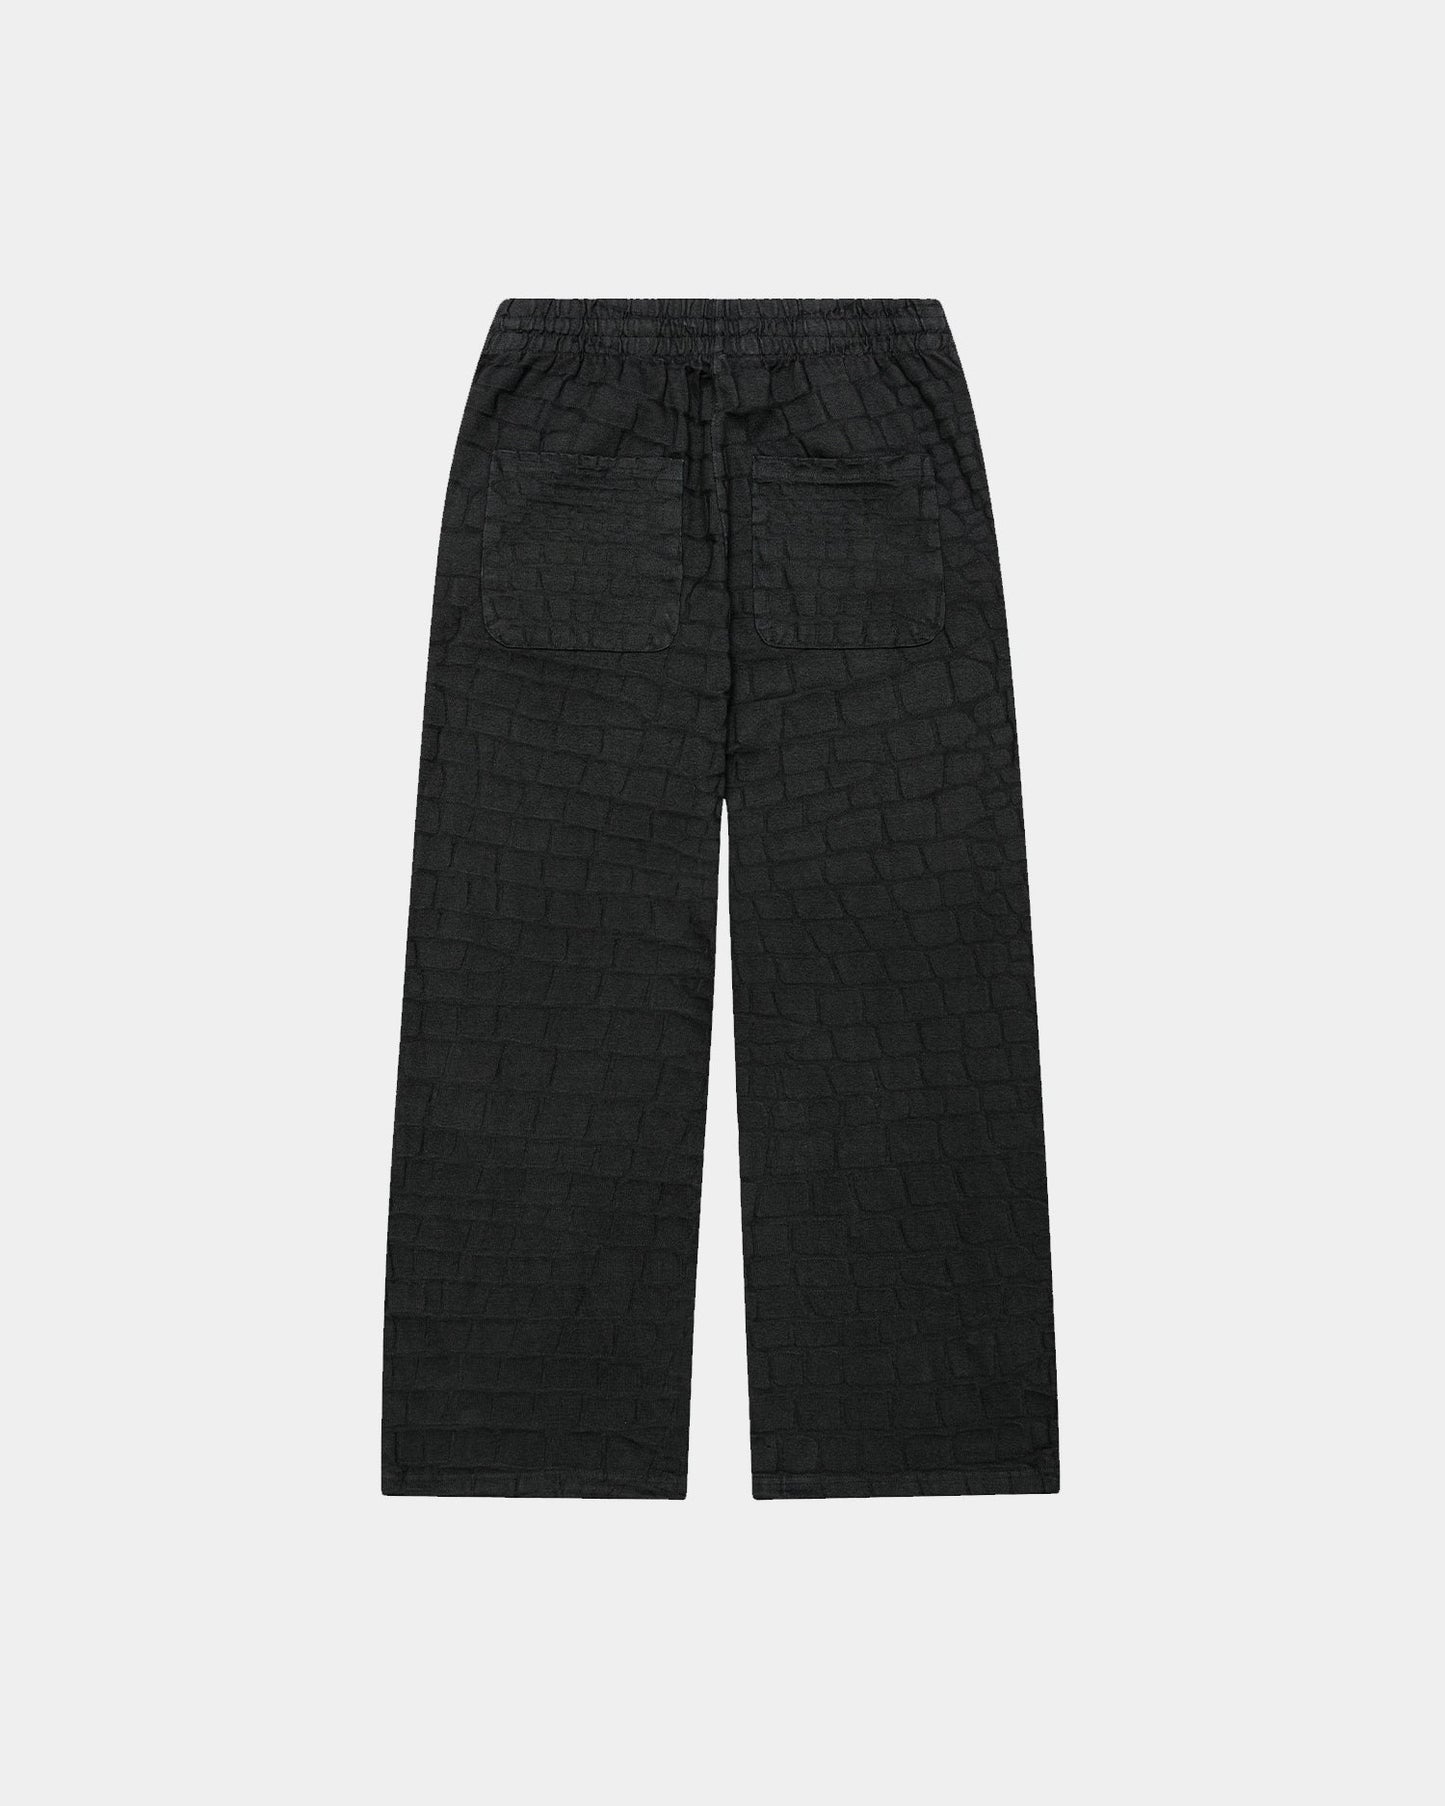 Alligator Vintage Black Sweatpants - mrcnoir